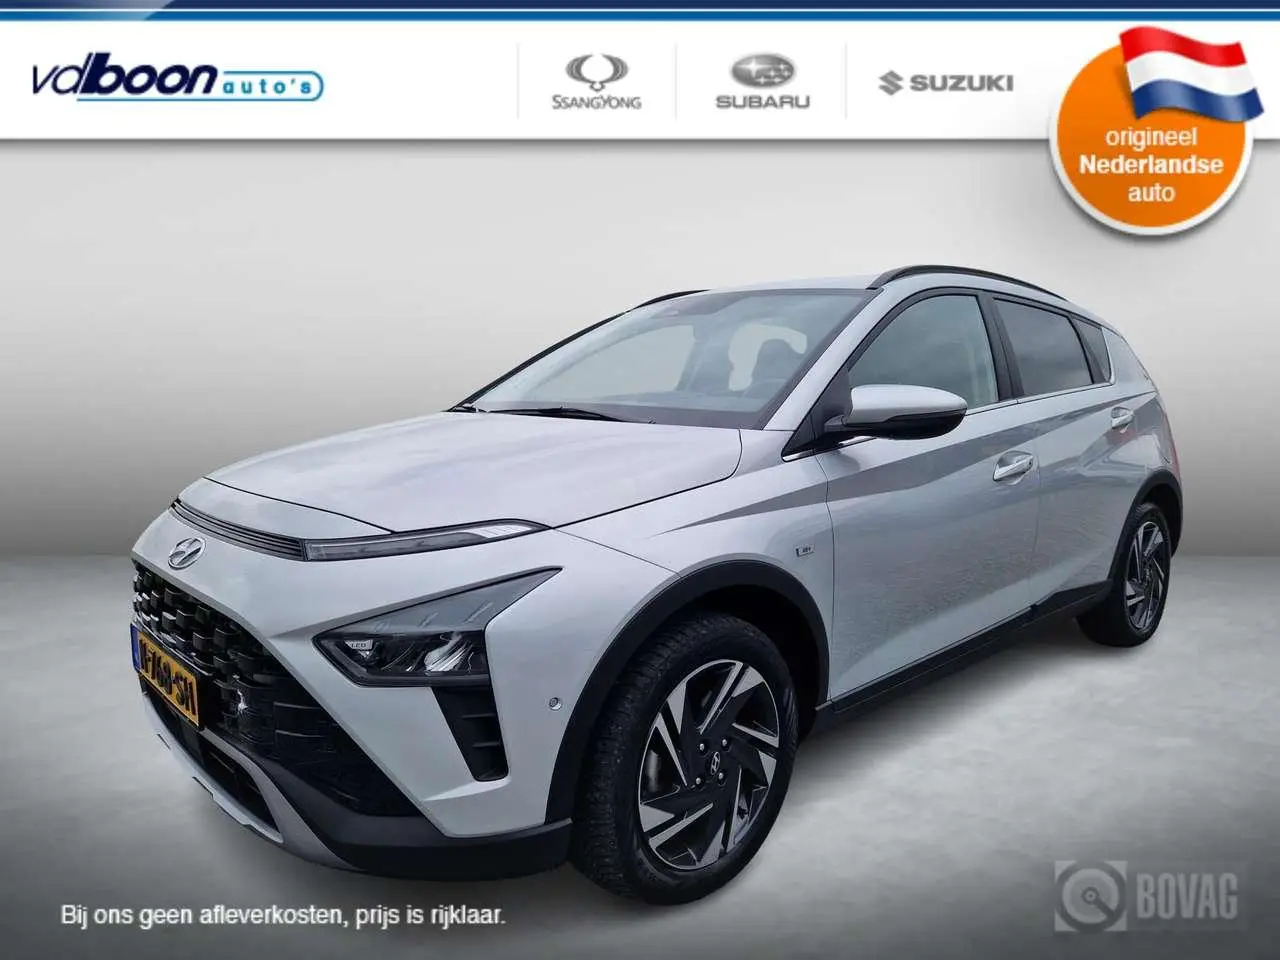 Photo 1 : Hyundai Bayon 2021 Hybrid